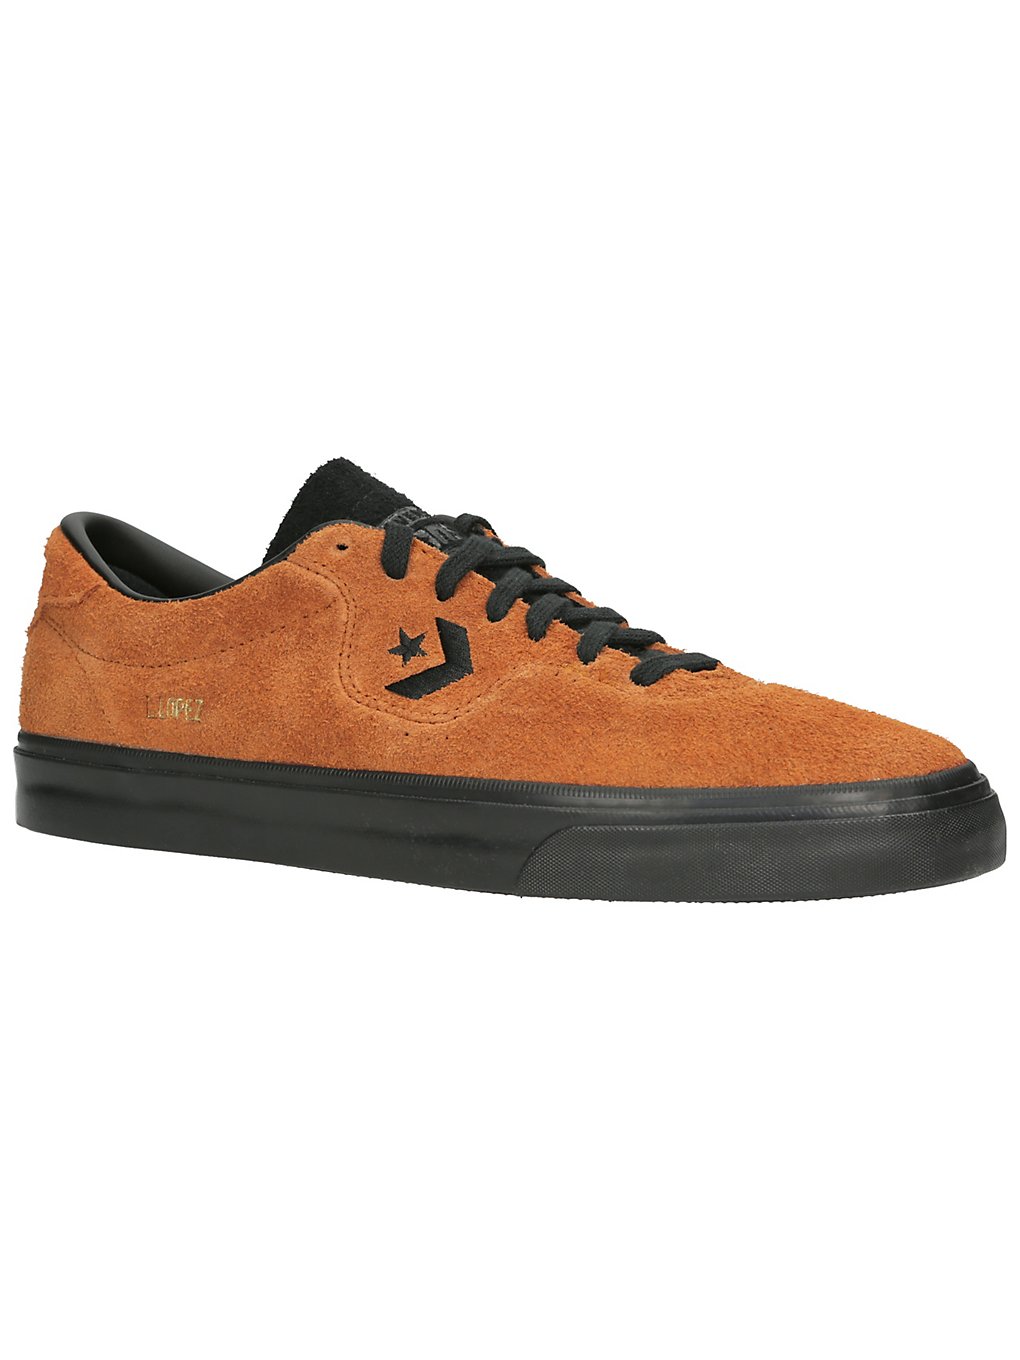 Converse Louie Lopez Pro Suede Skate Shoes oransj